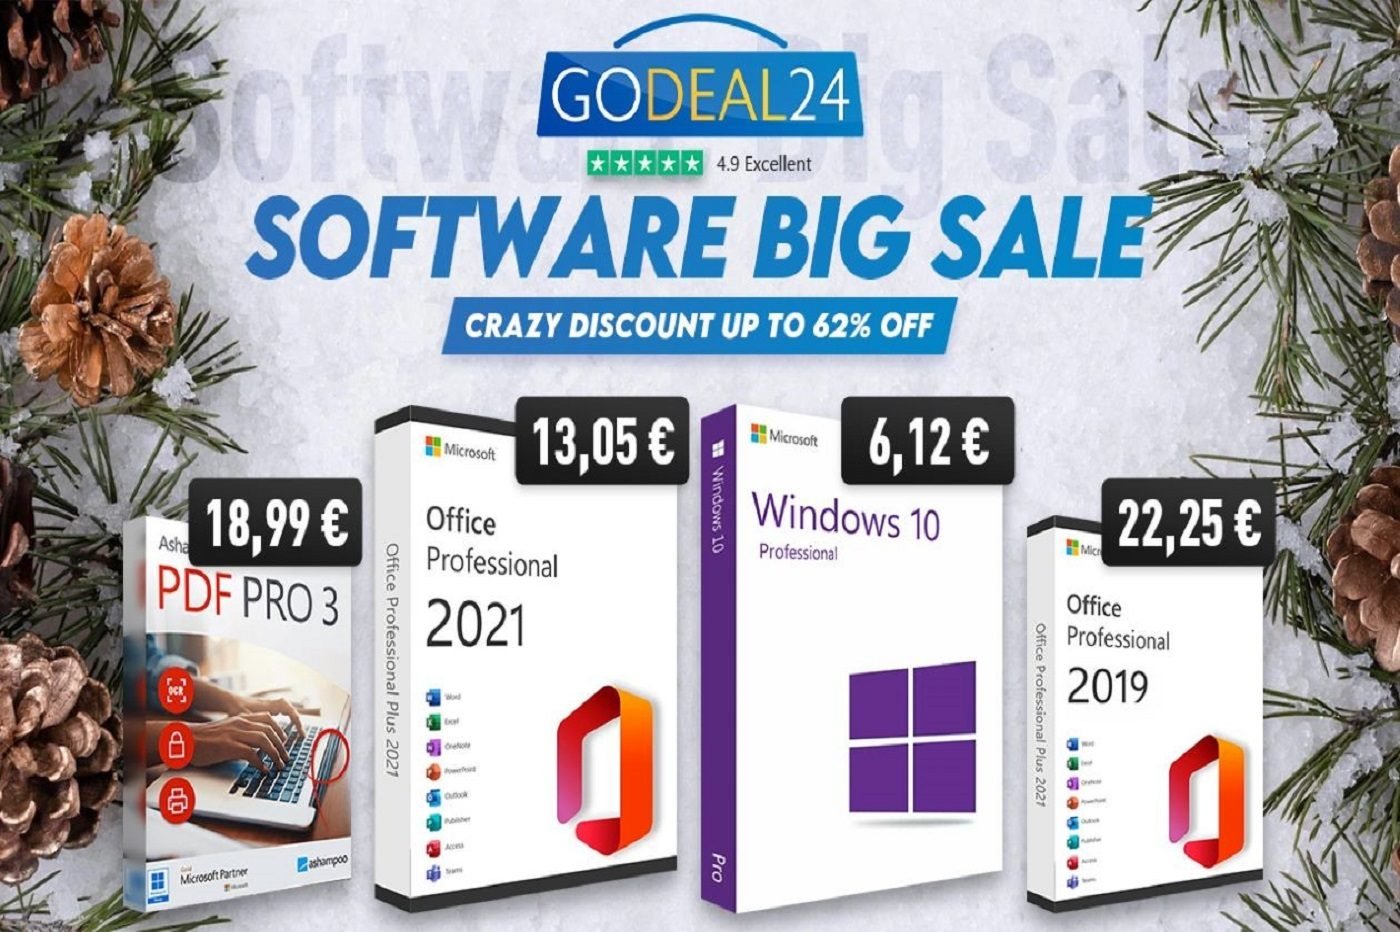 GoDeal24.com : la licence Windows 10 à seulement 7,40 euros